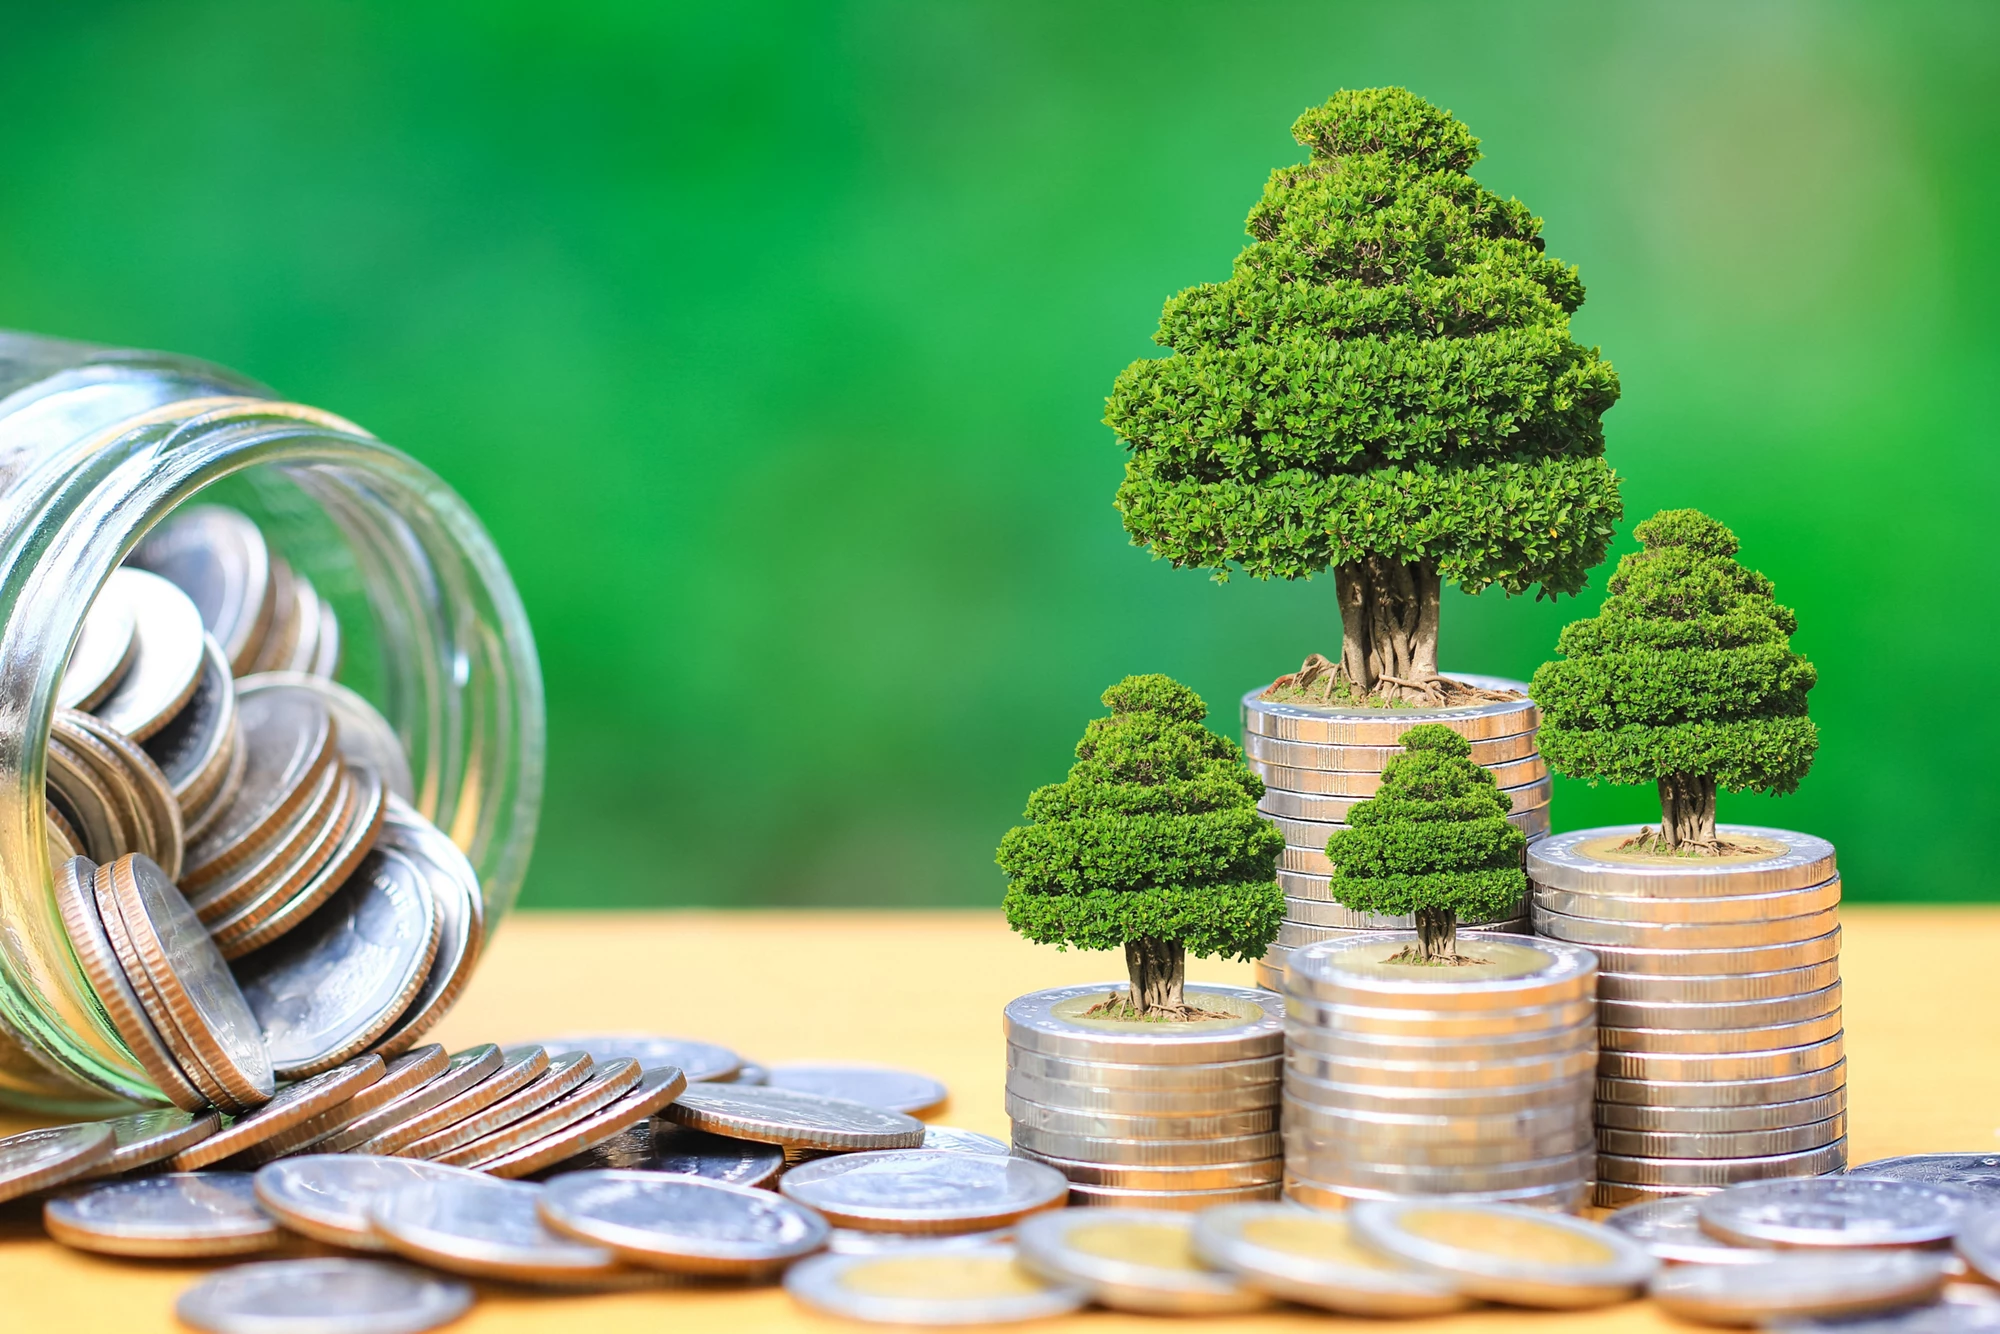 Inversiones verdes y negocio | Crédito de la foto: Monthira, Shutterstock